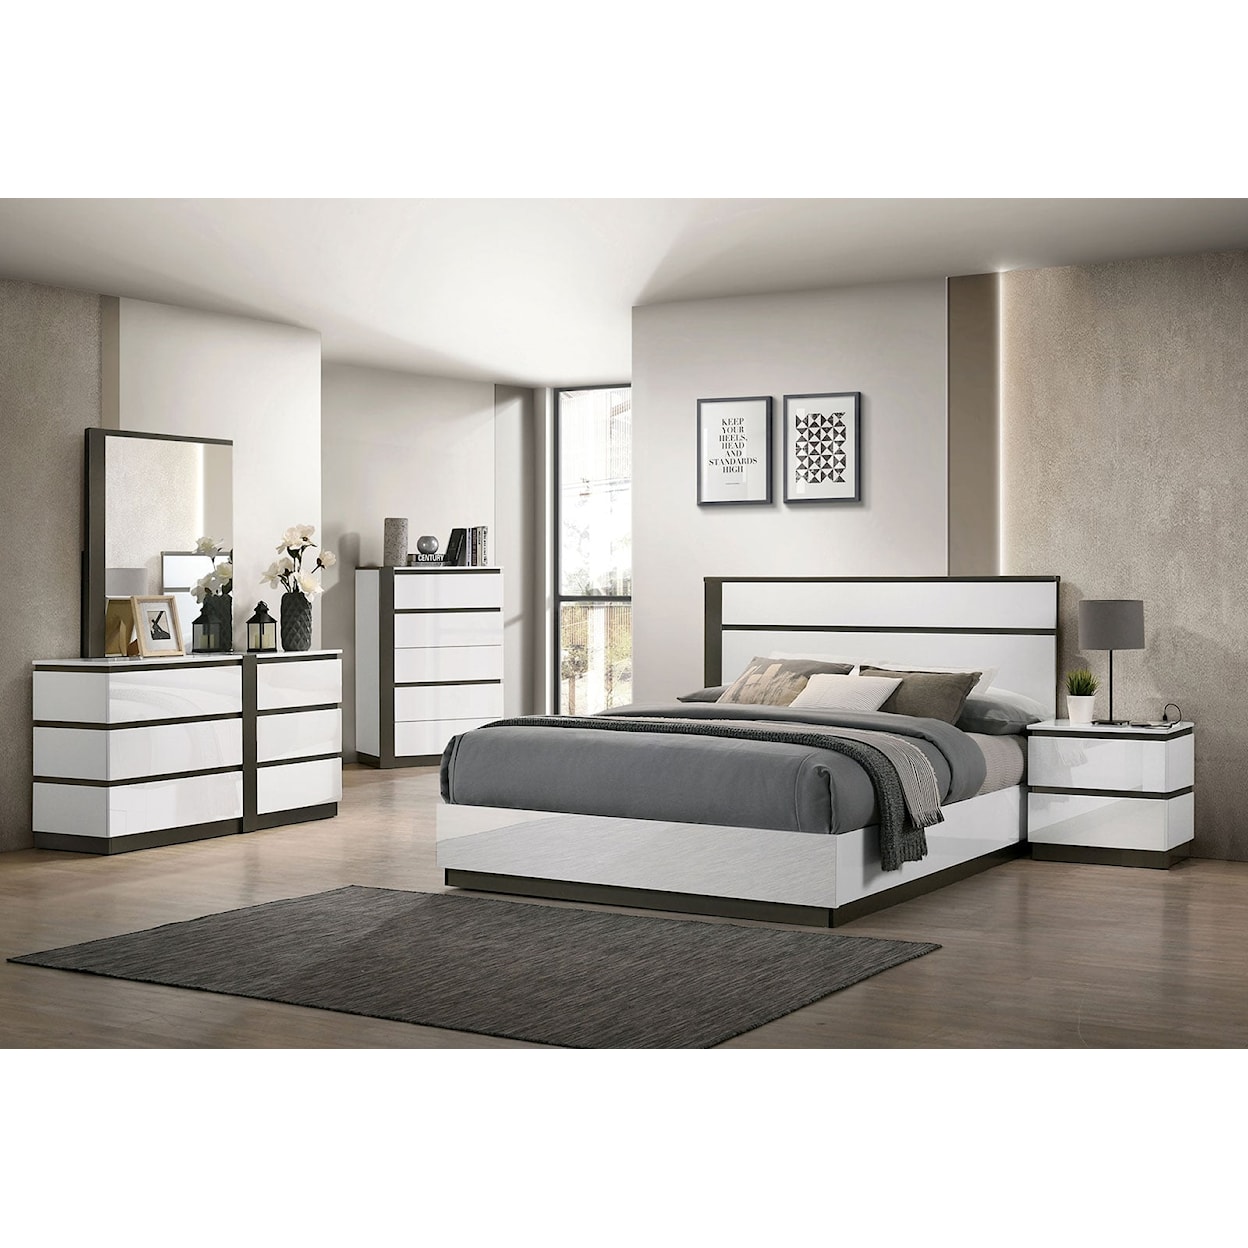 Furniture of America Birsfelden 4-Piece Queen Bedroom Set